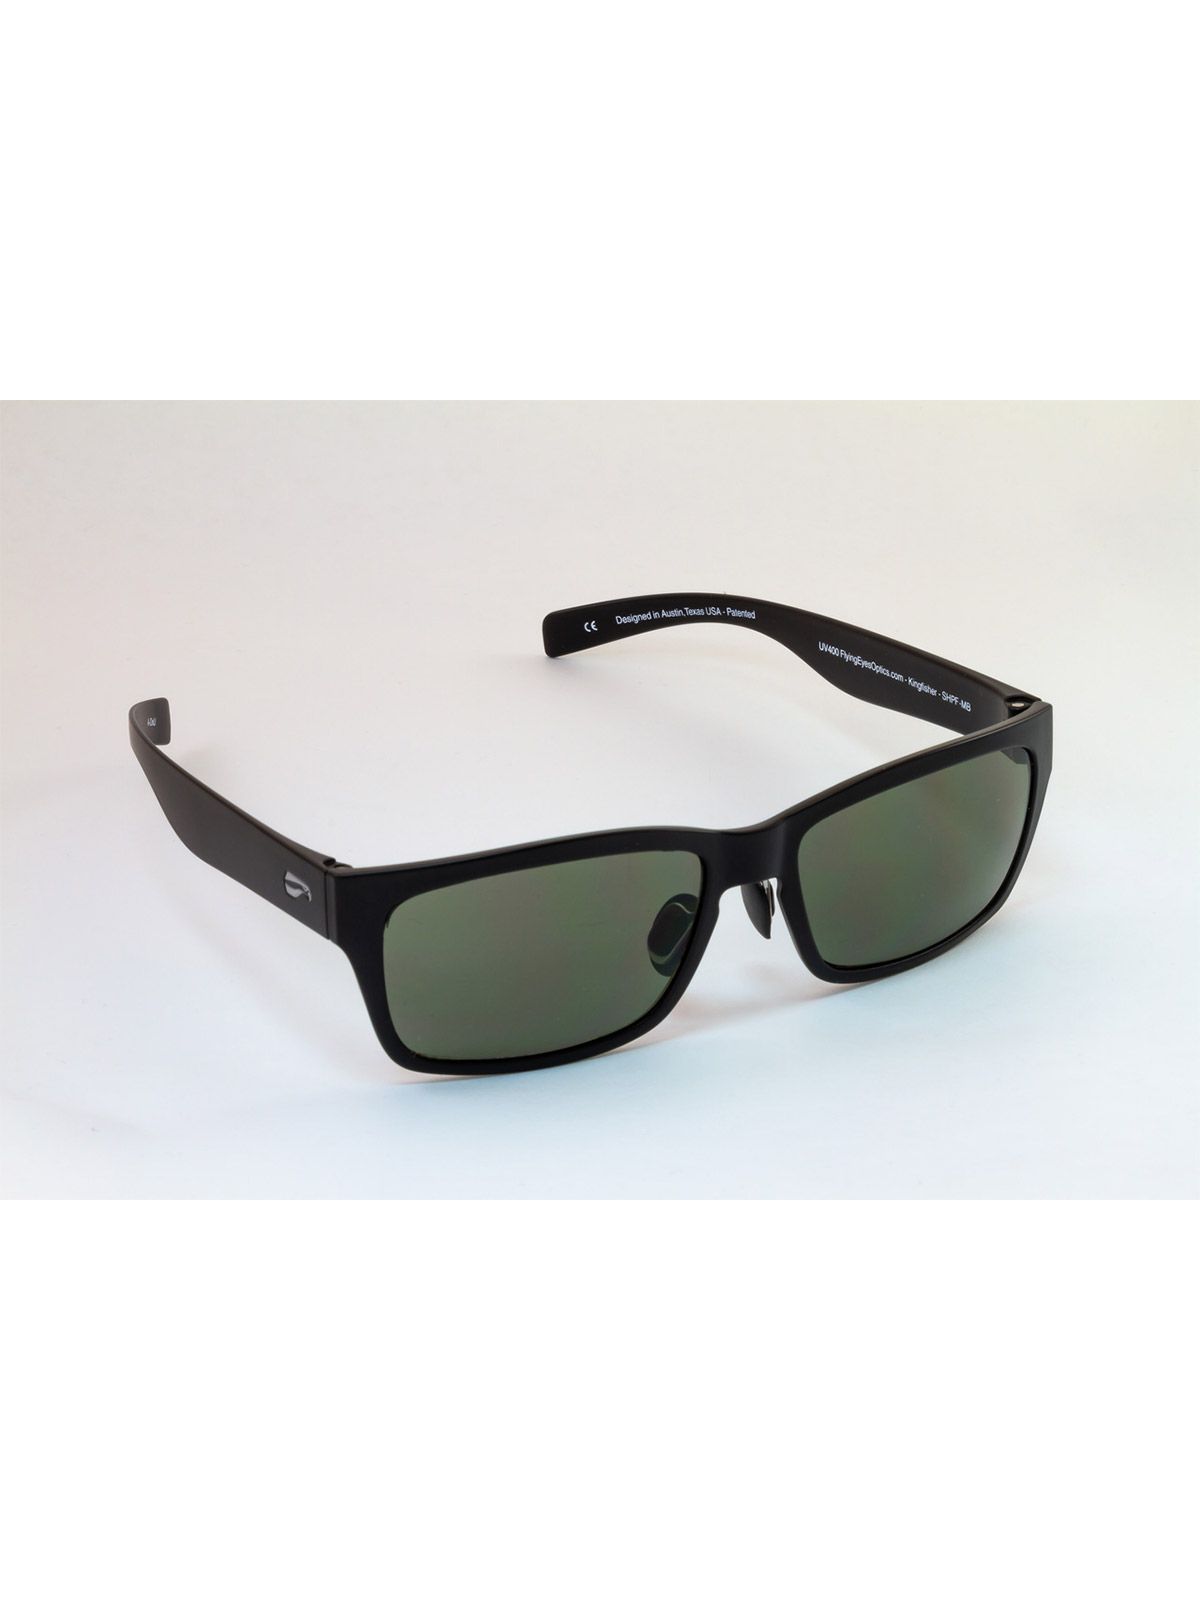 Flying Eyes Sunglasses Kingfisher - Glossy Black Frame, G15 (Neutral Green) Lenses